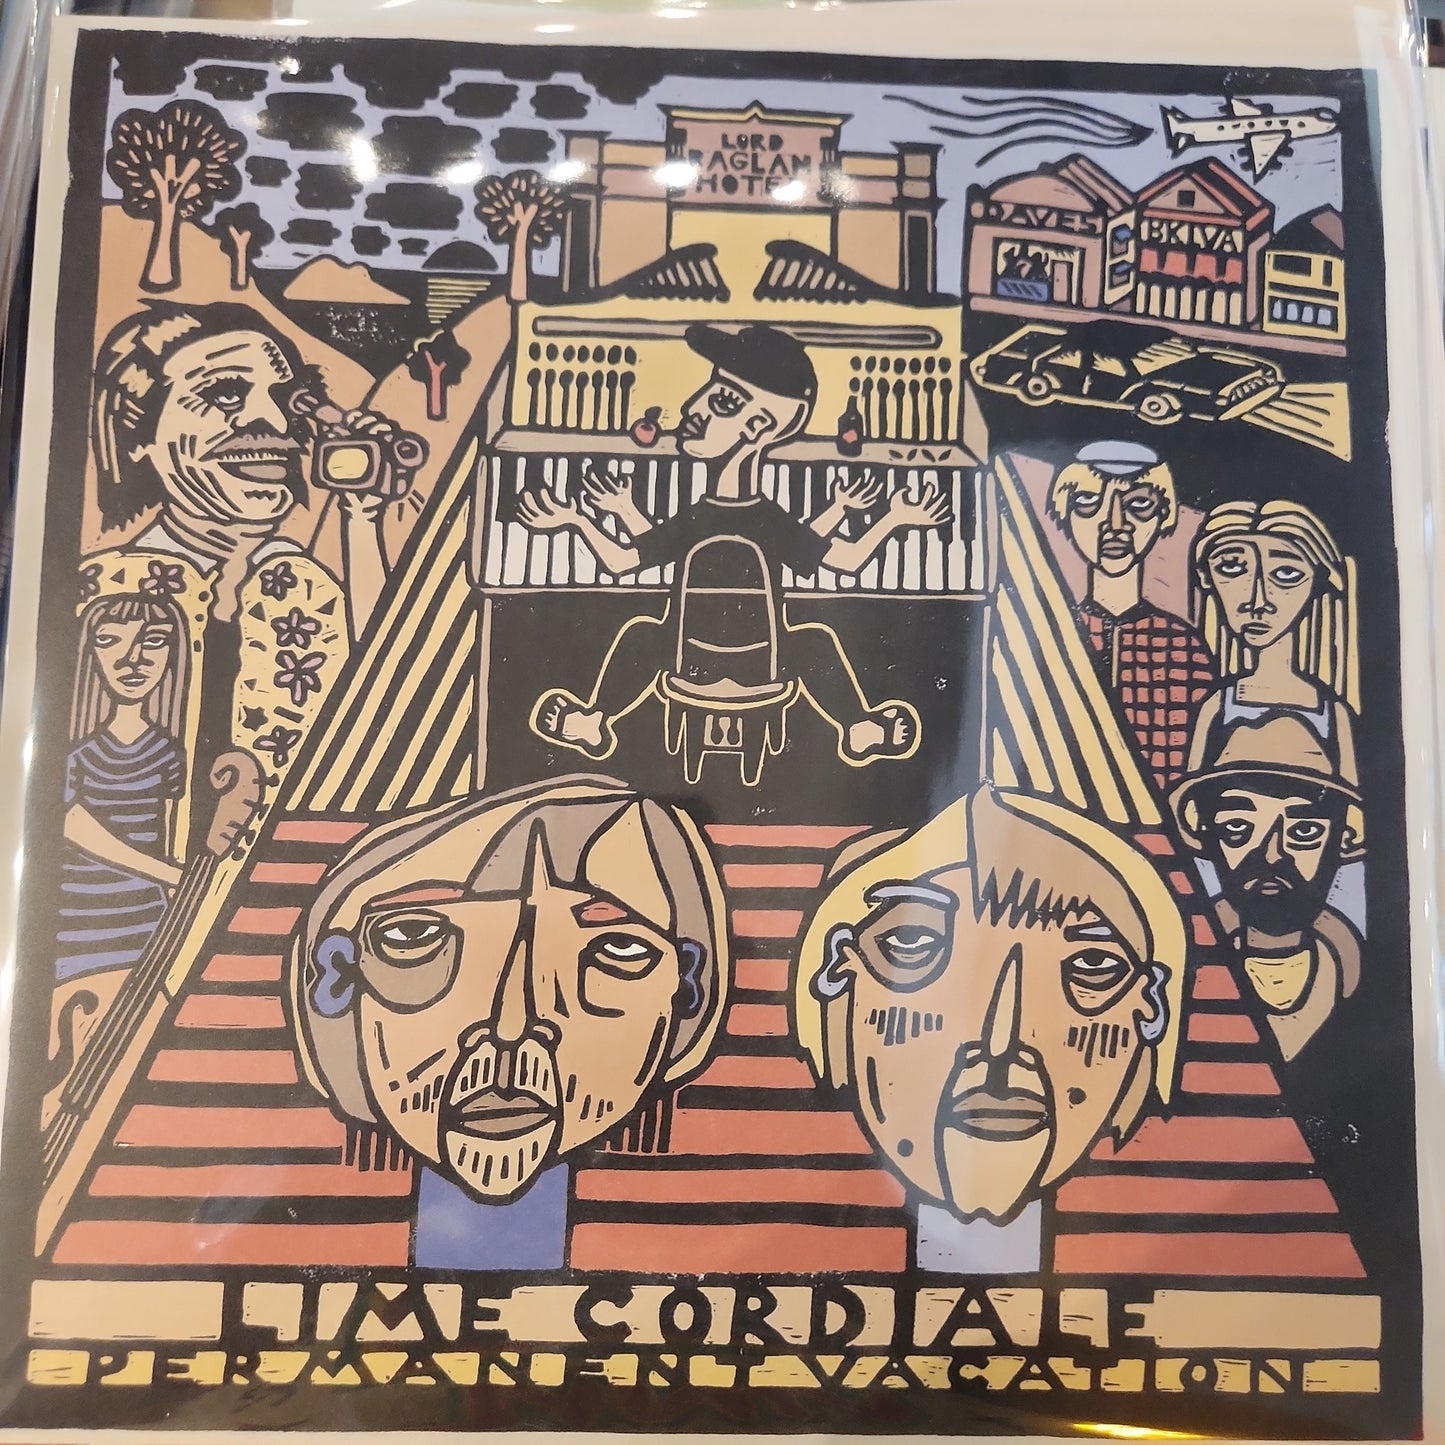 Lime Cordiale - Permanent Vacation - Vinyl LP